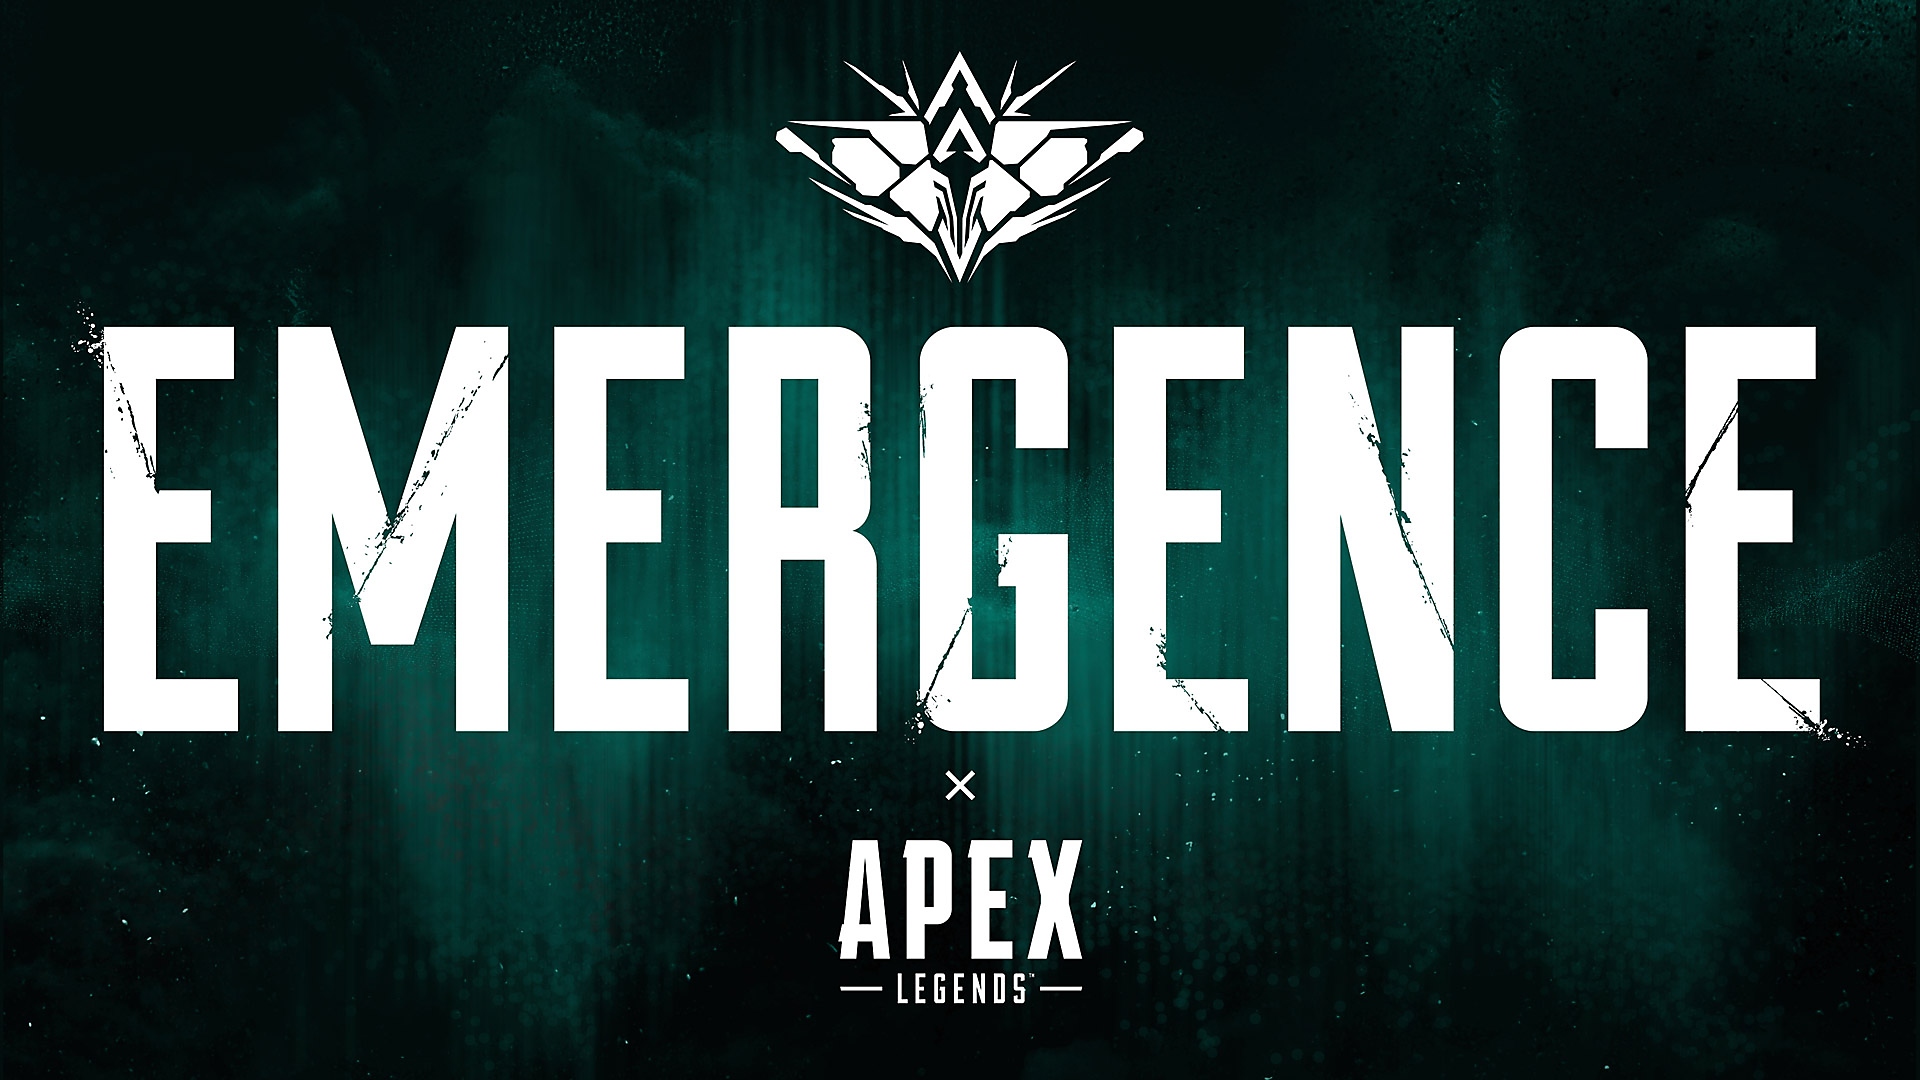 Apex Legends - Battle Pass overview